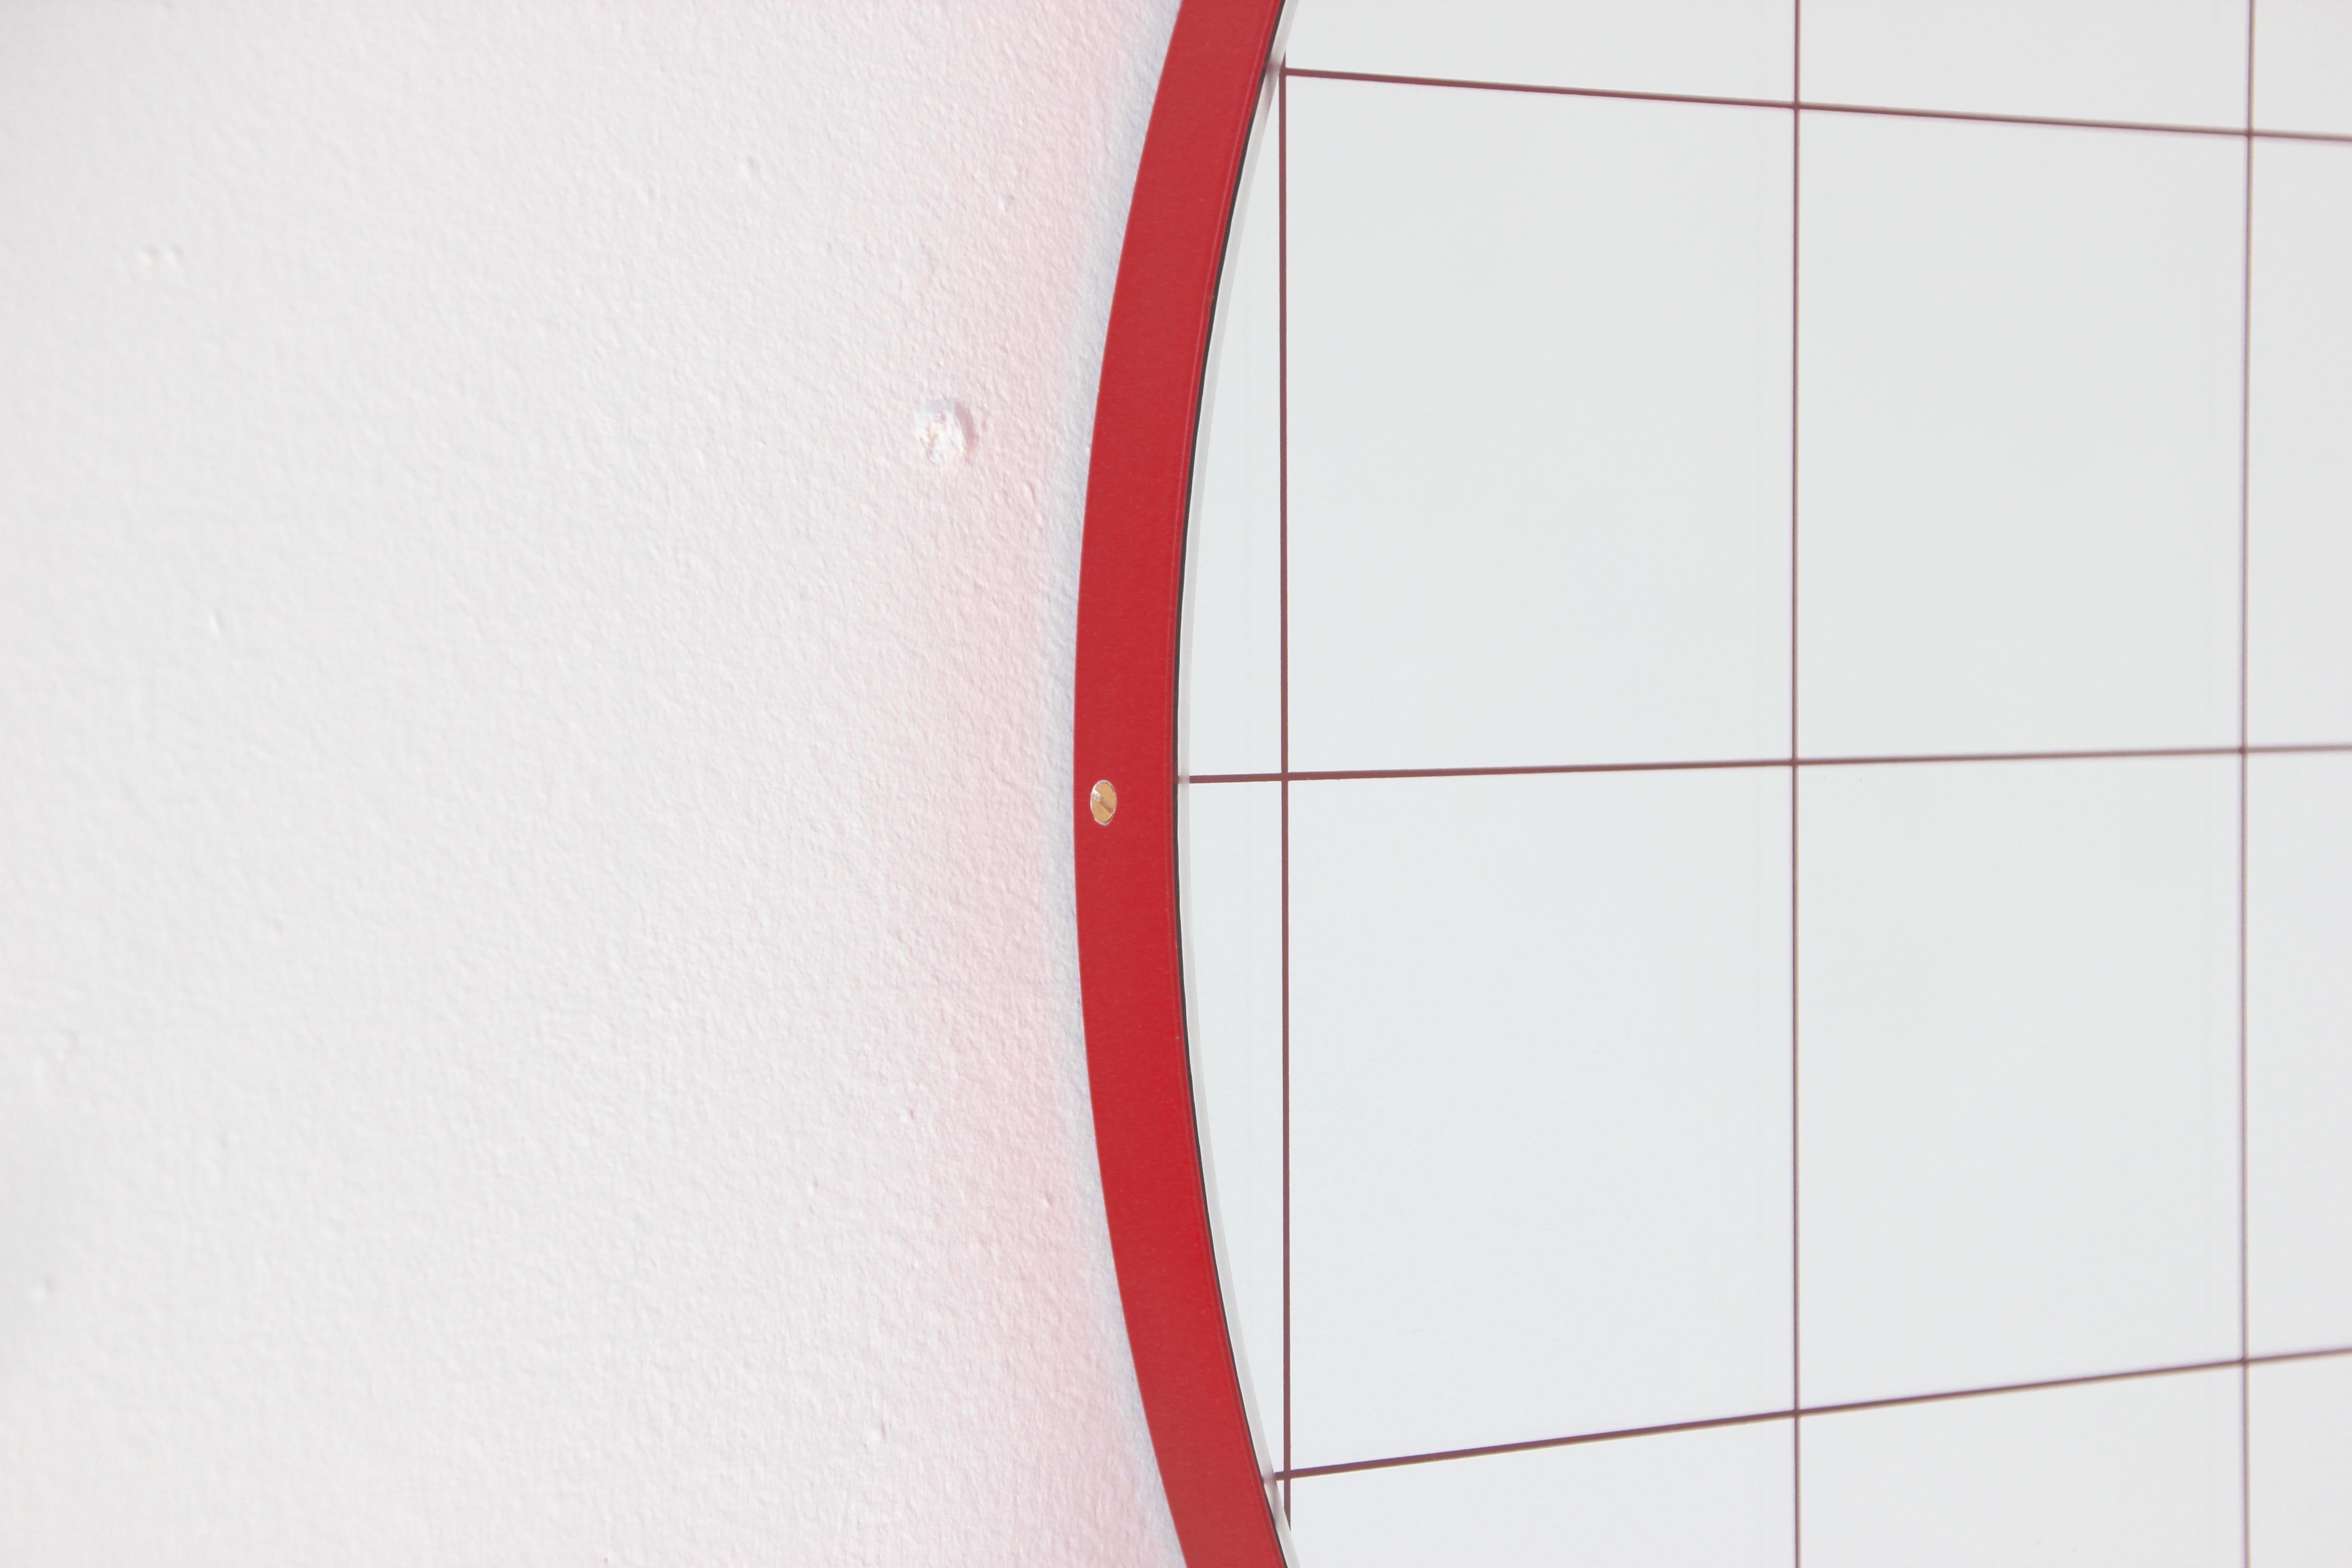 Orbis Red Grid Round Modern Sandblasted Mirror with Red Frame, Medium 1